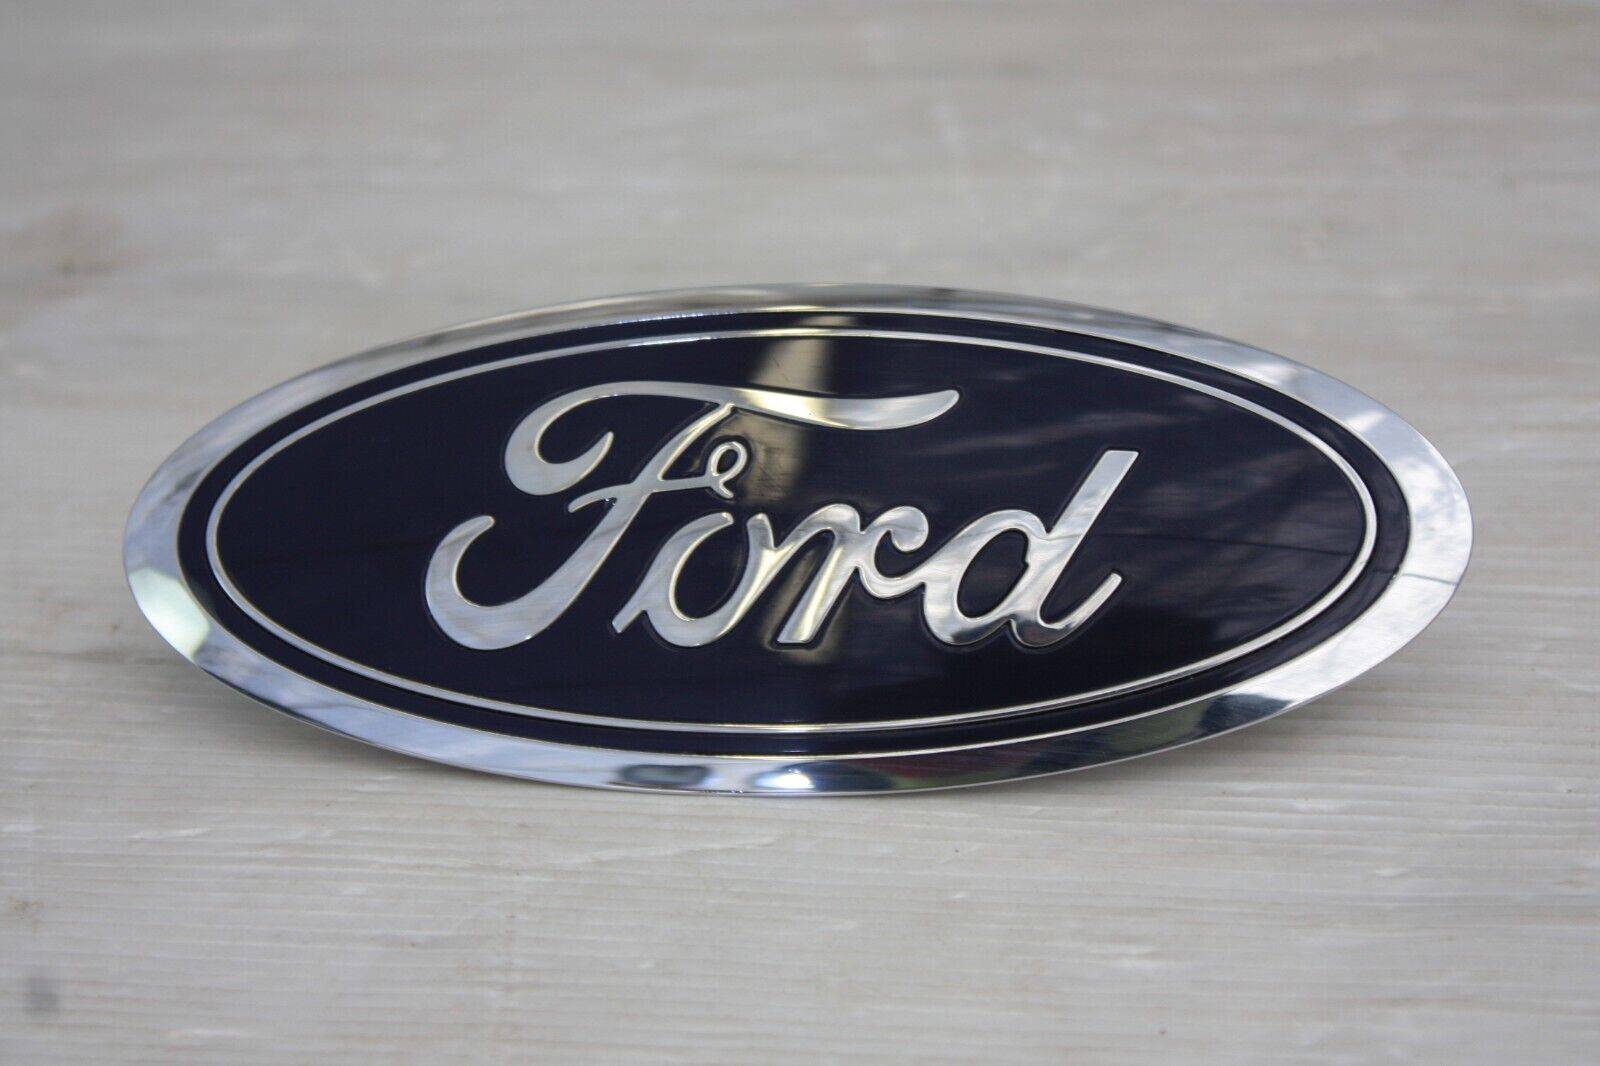 Ford Kuga Front Bumper Emblem Badge GJ54 8B262 A Genuine 176340691441